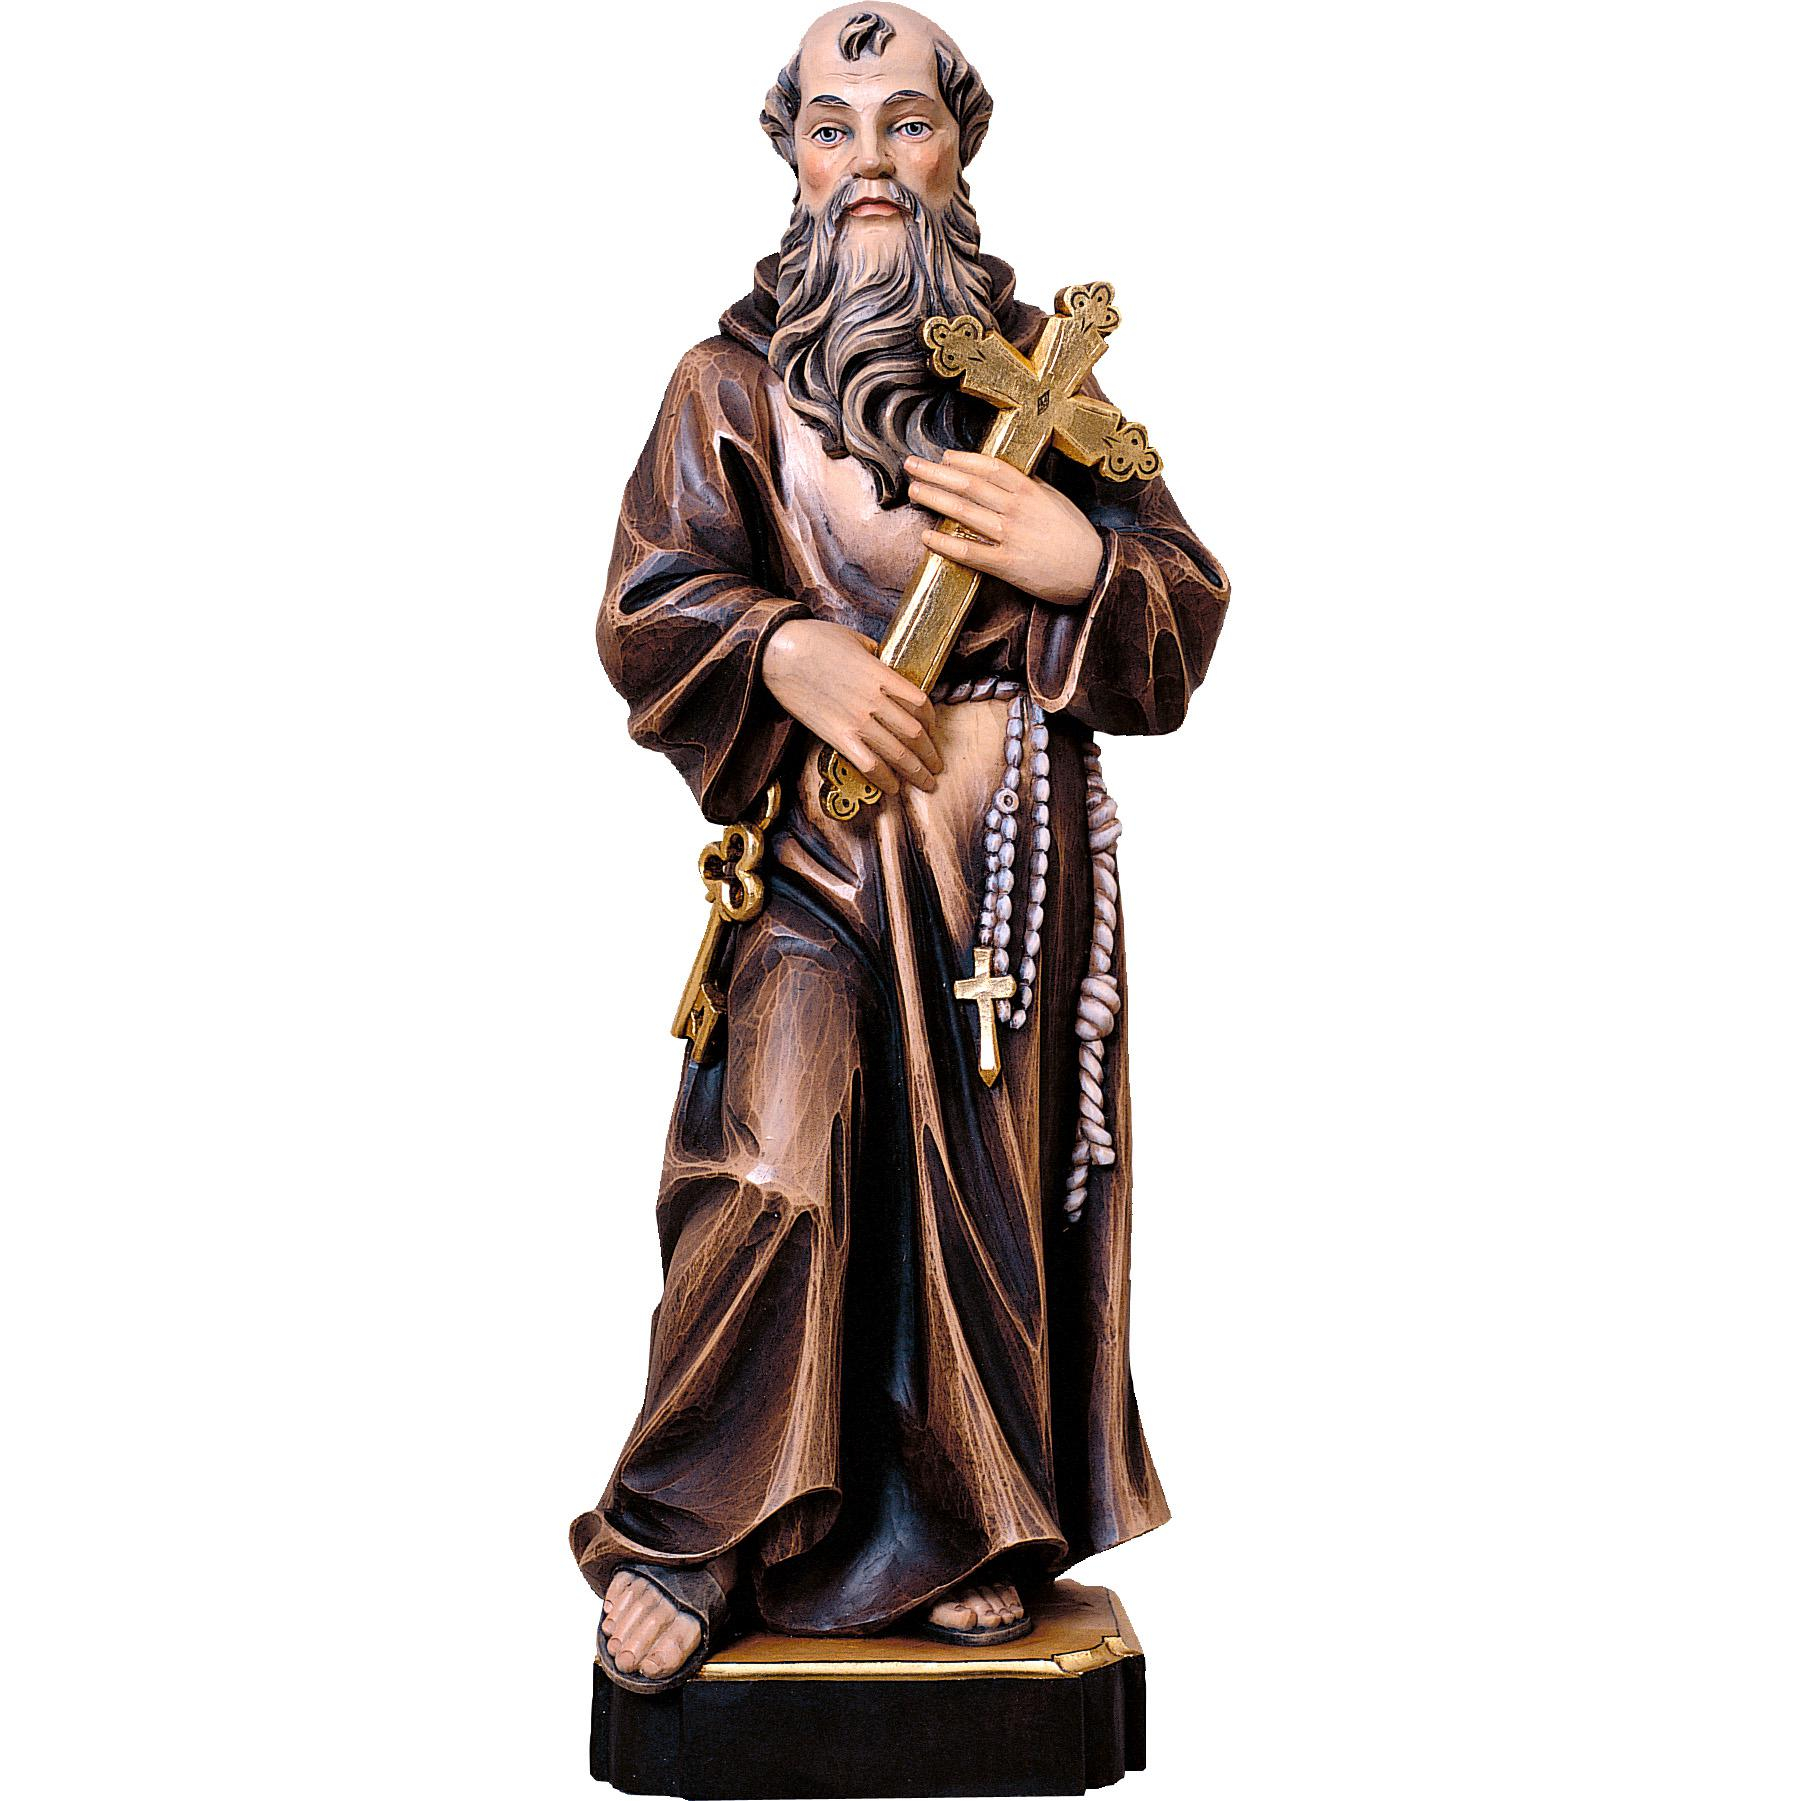 Conrad the Monk wooden statue